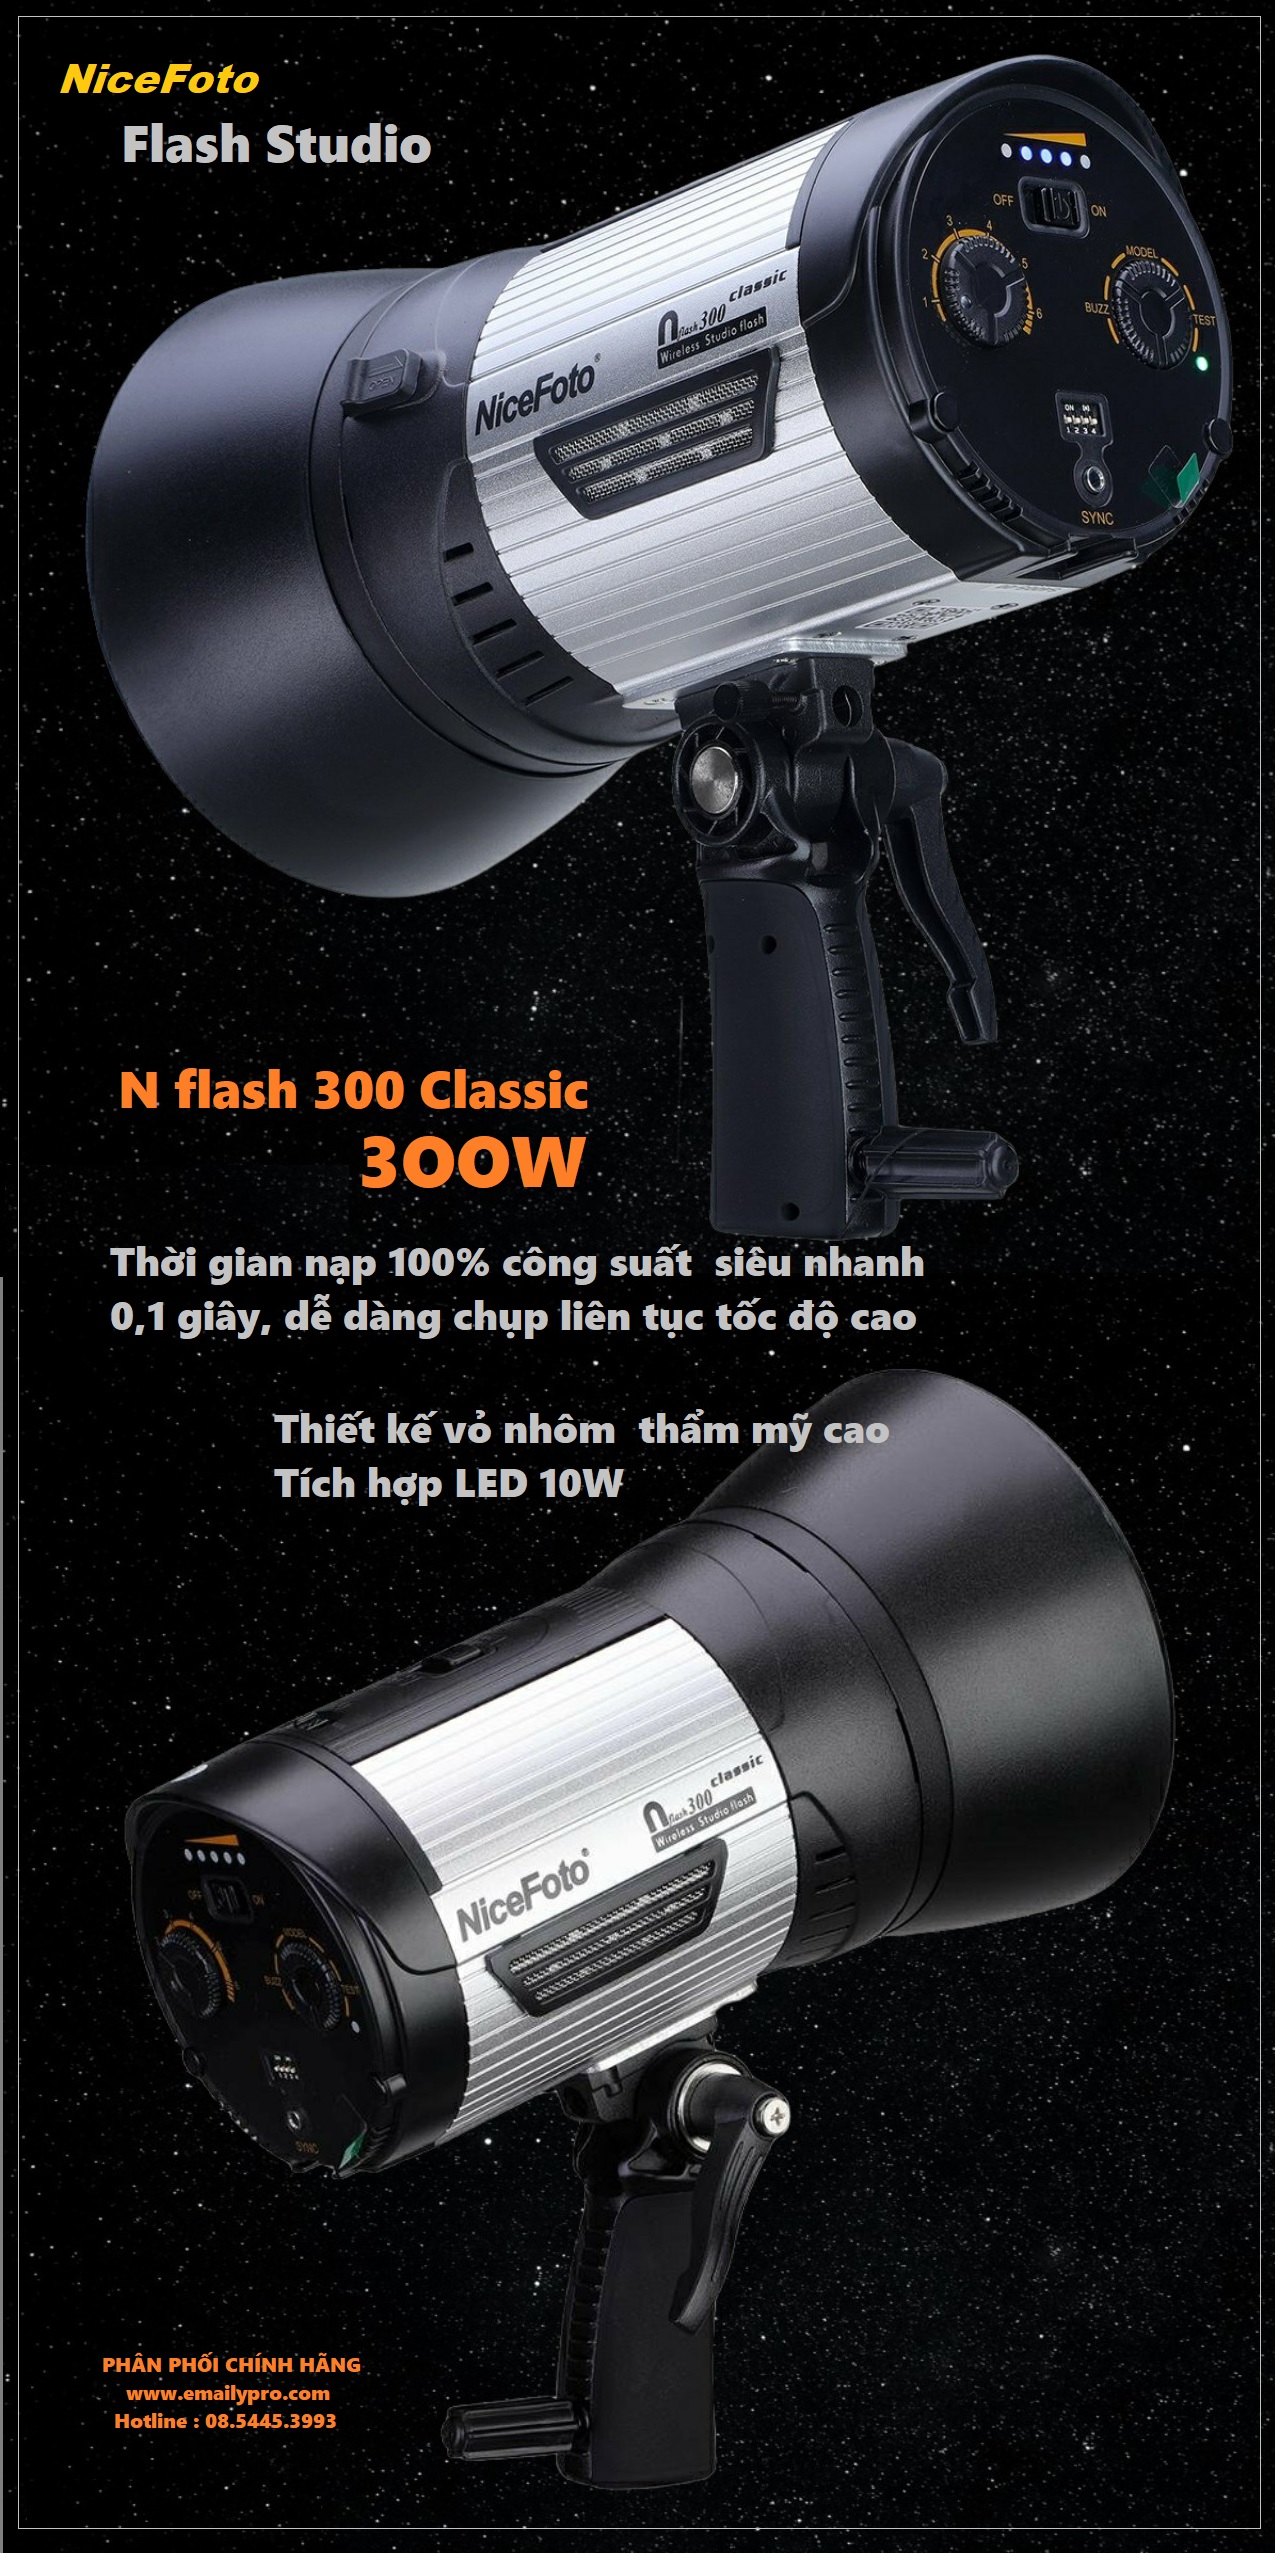 NiceFoto Nflash 300ws Đèn flash Studio chiếu sáng thiết bị chụp ảnh cho ngoài trời